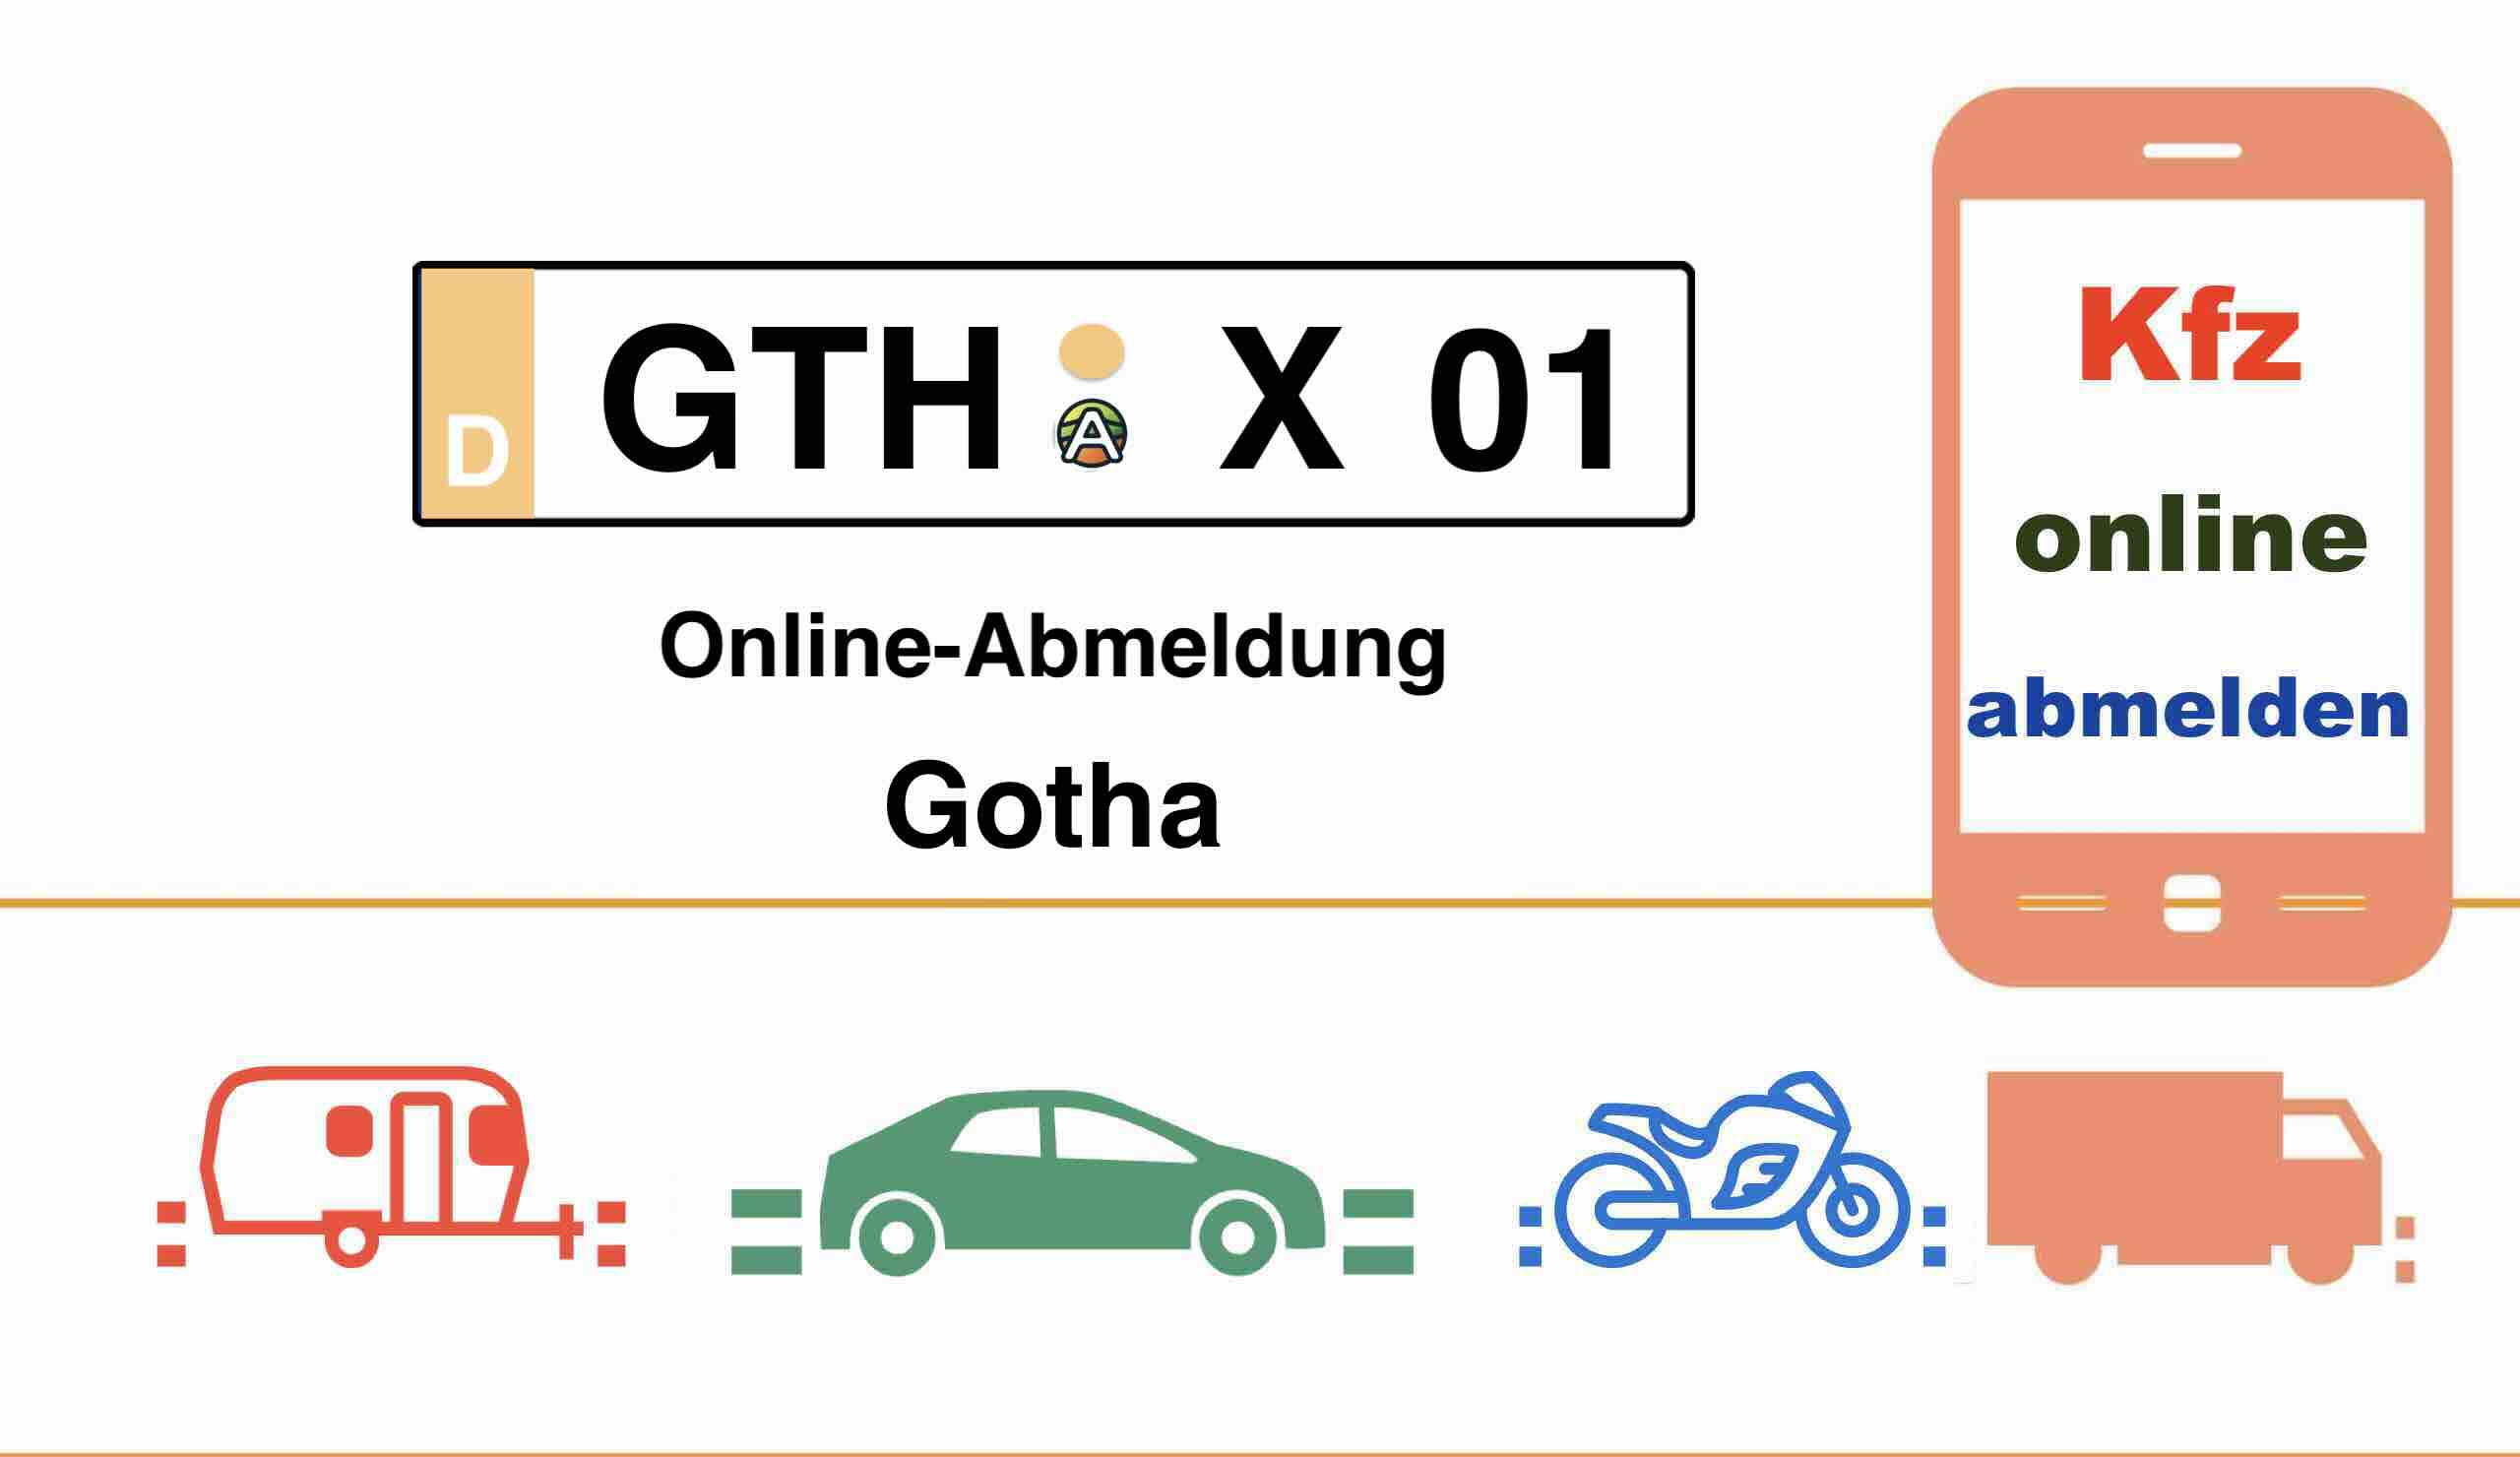 Online-Abmeldung in Gotha 